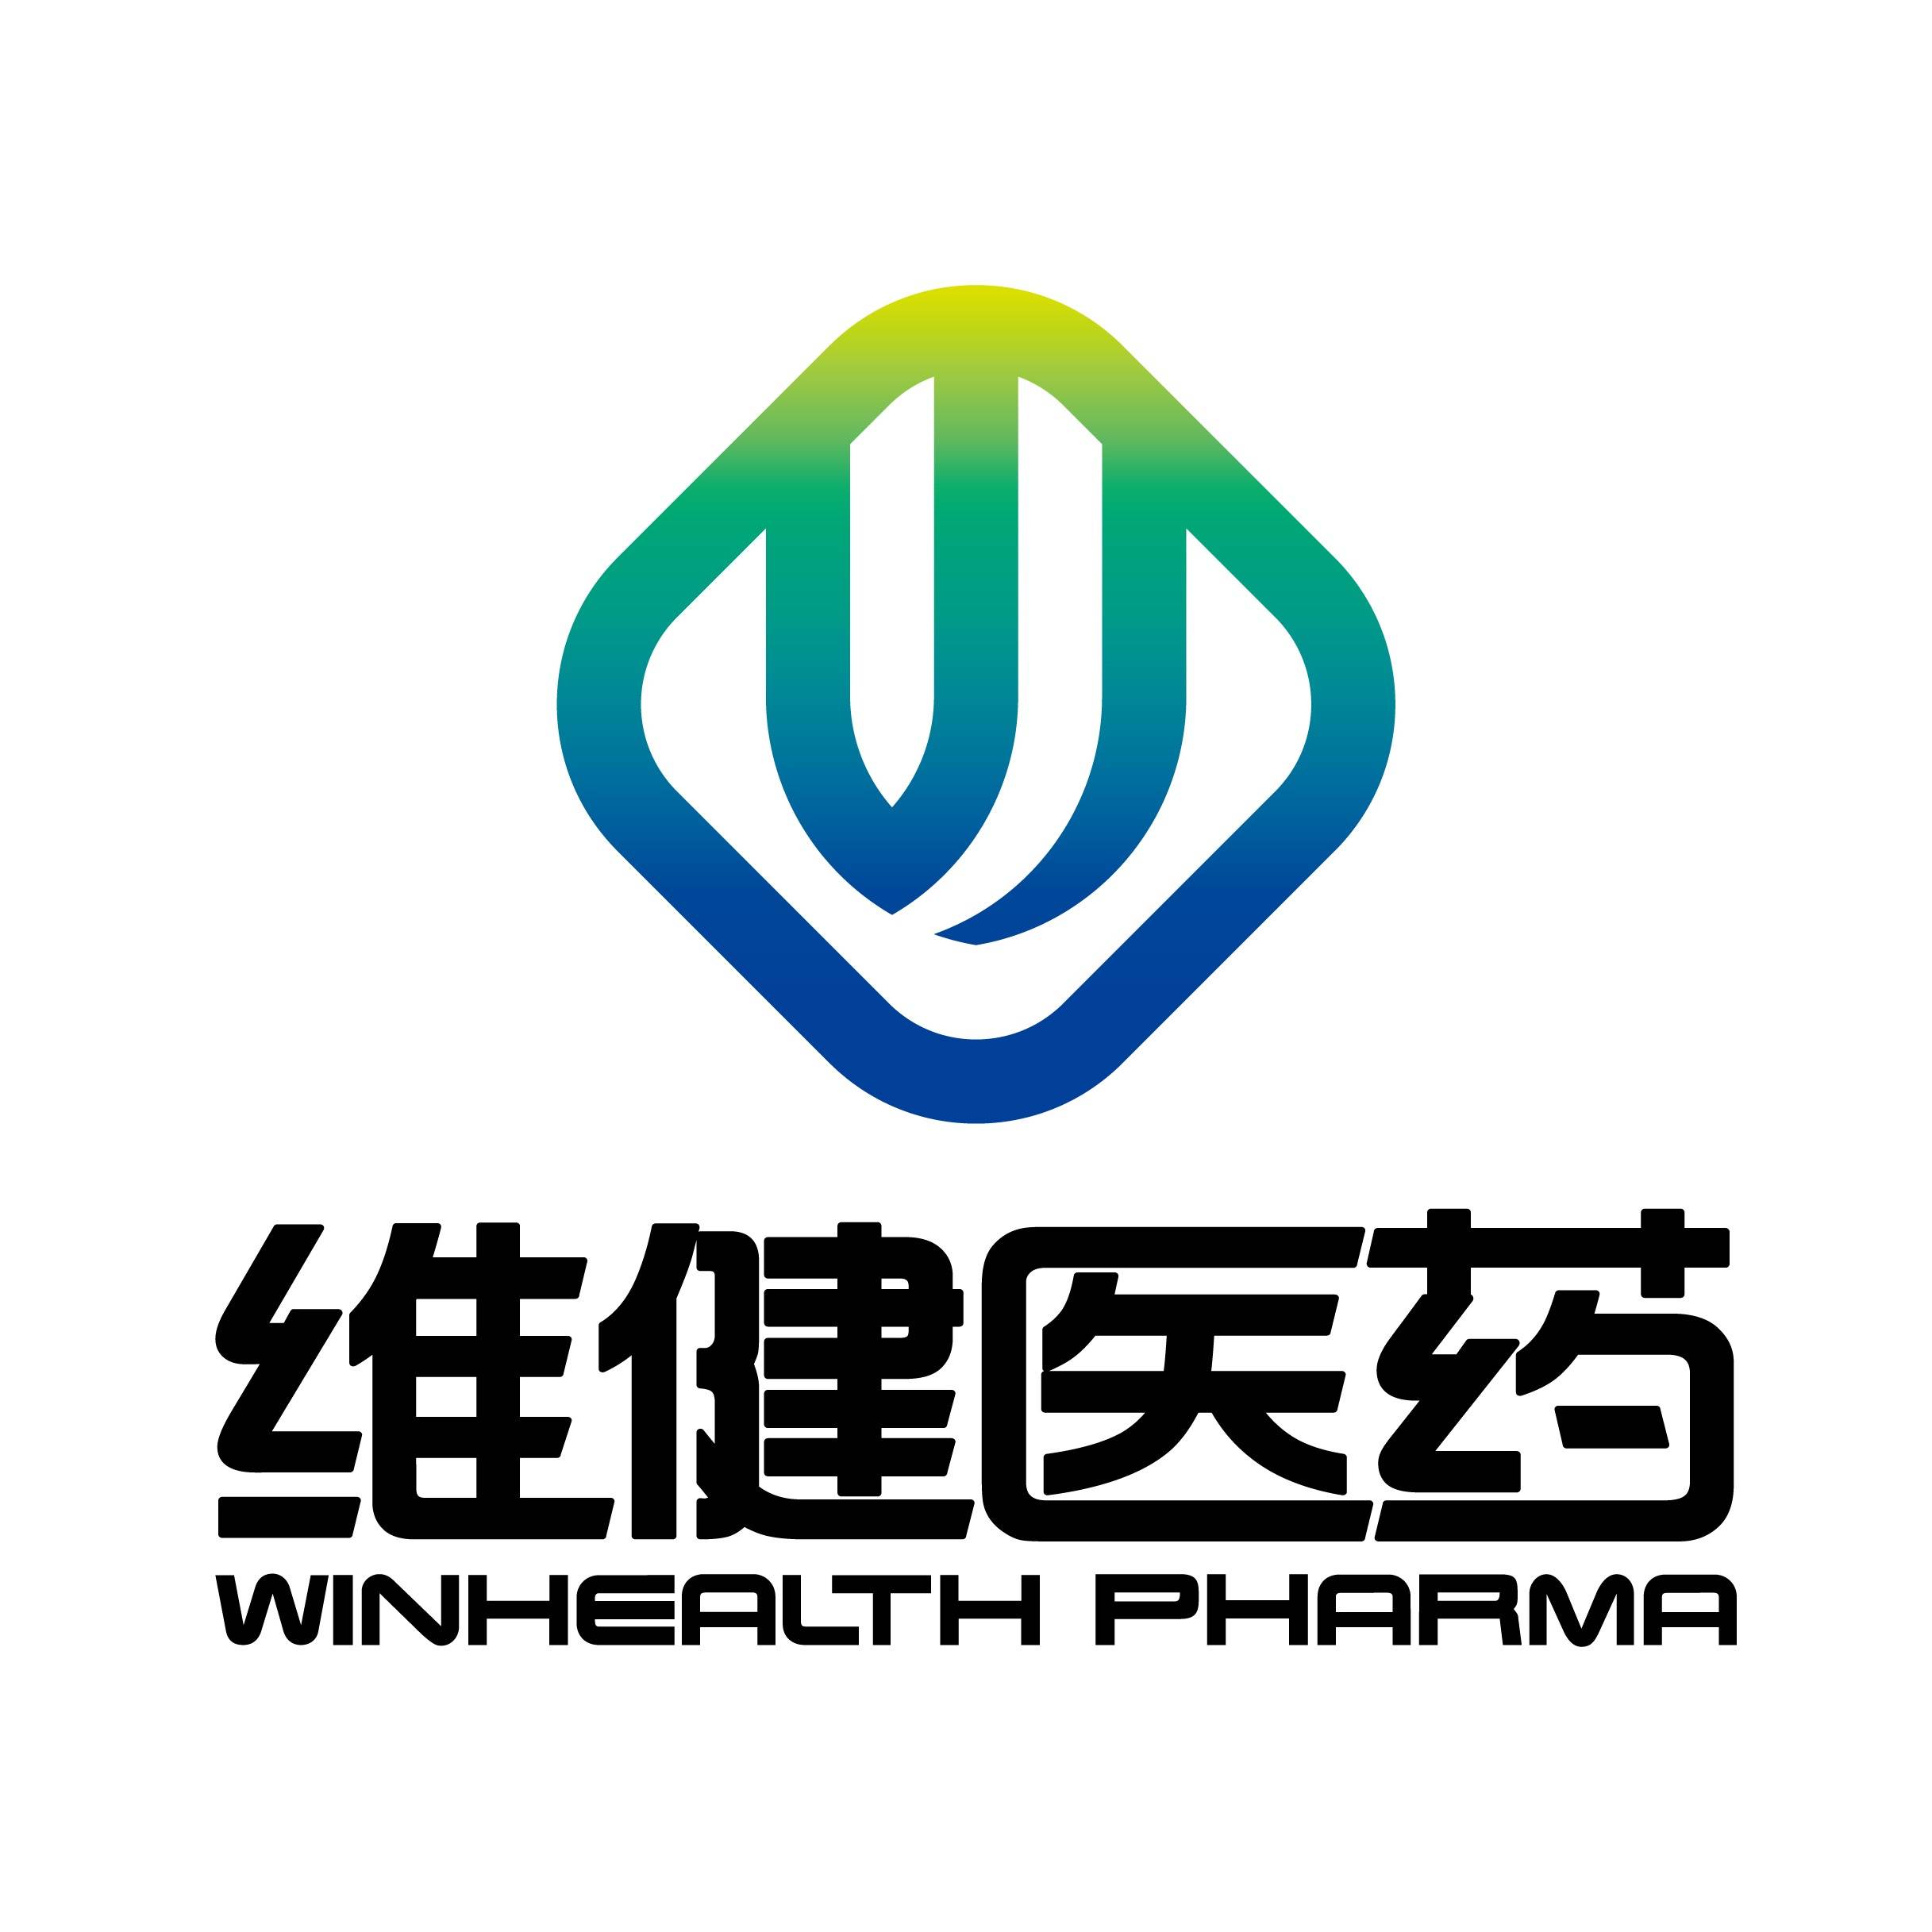 维健医药是一家立足中国、覆盖亚太区域的创新型生物制药公司。